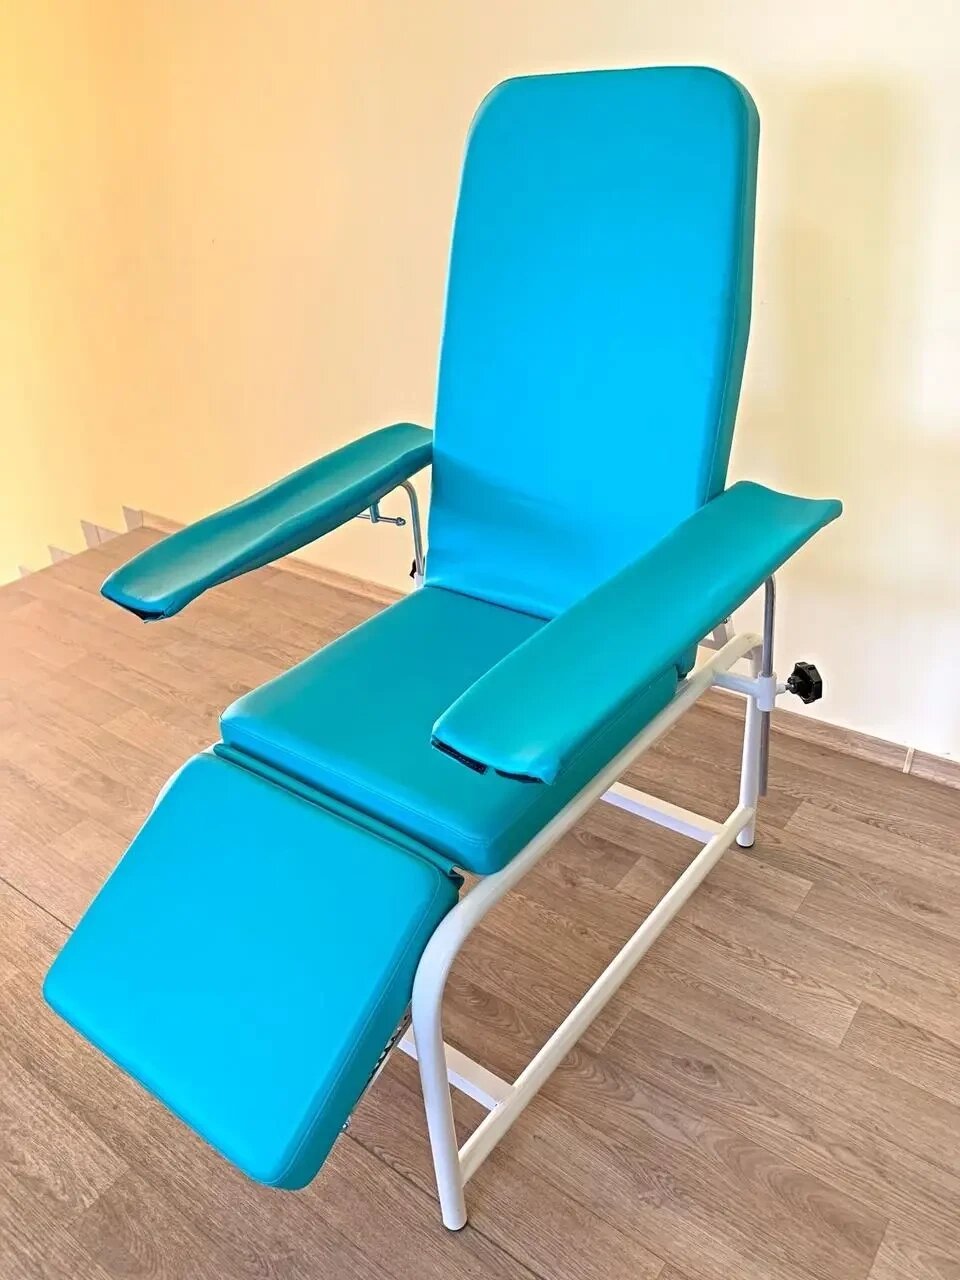 Крісло донорське для забору крові сорбційне АТОН КД-01 від компанії Медтехніка ZENET - Товари для здоров'я, затишку та комфорта - фото 1